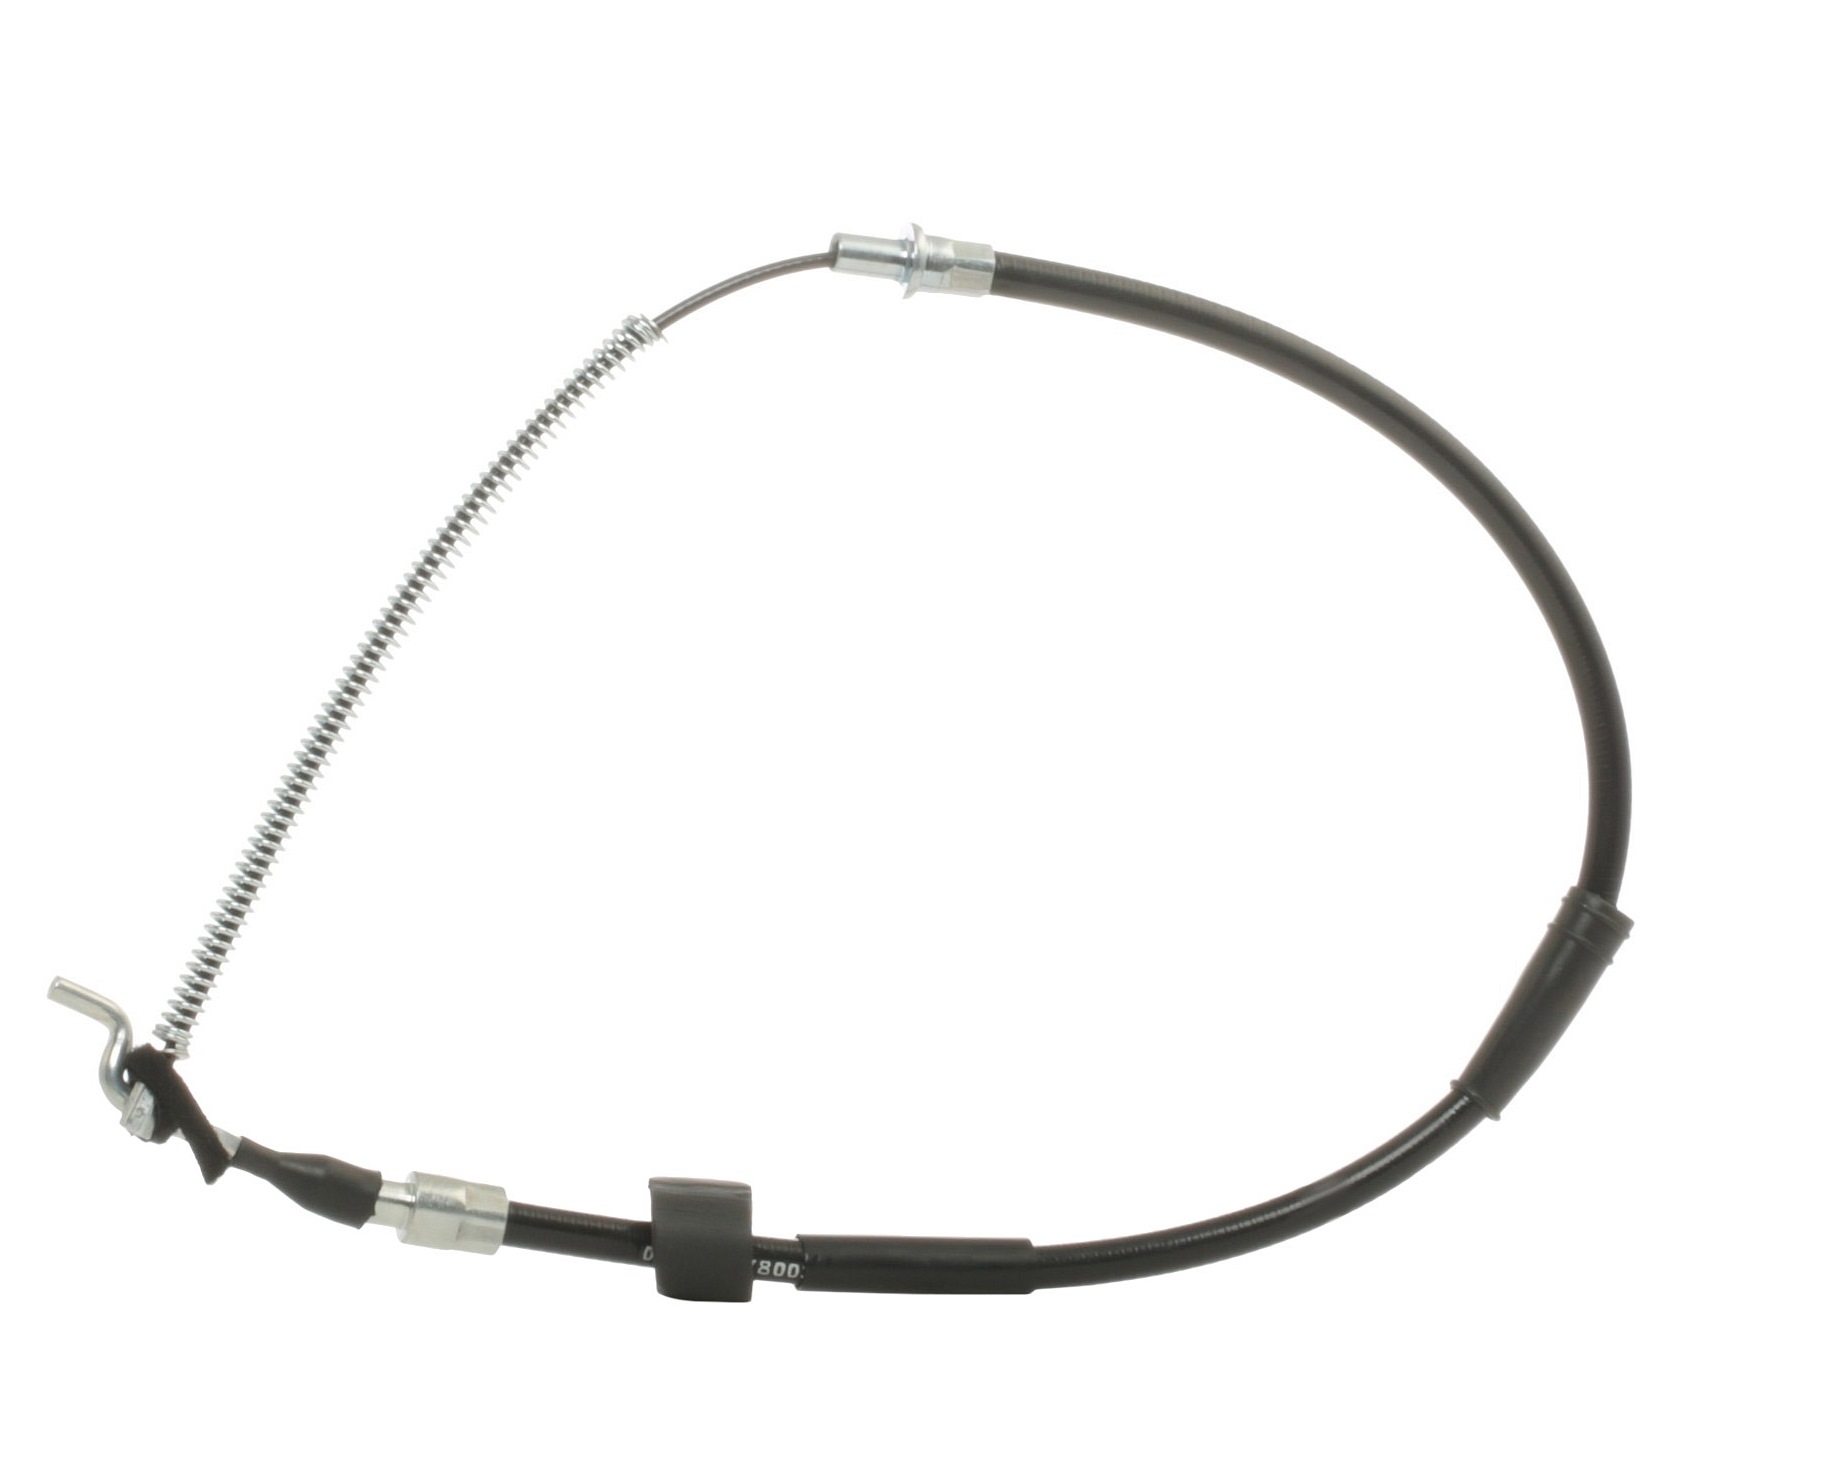 STARK SKCPB-1050132 Hand brake cable Right Rear, Left Rear, 844/506mm, Drum Brake